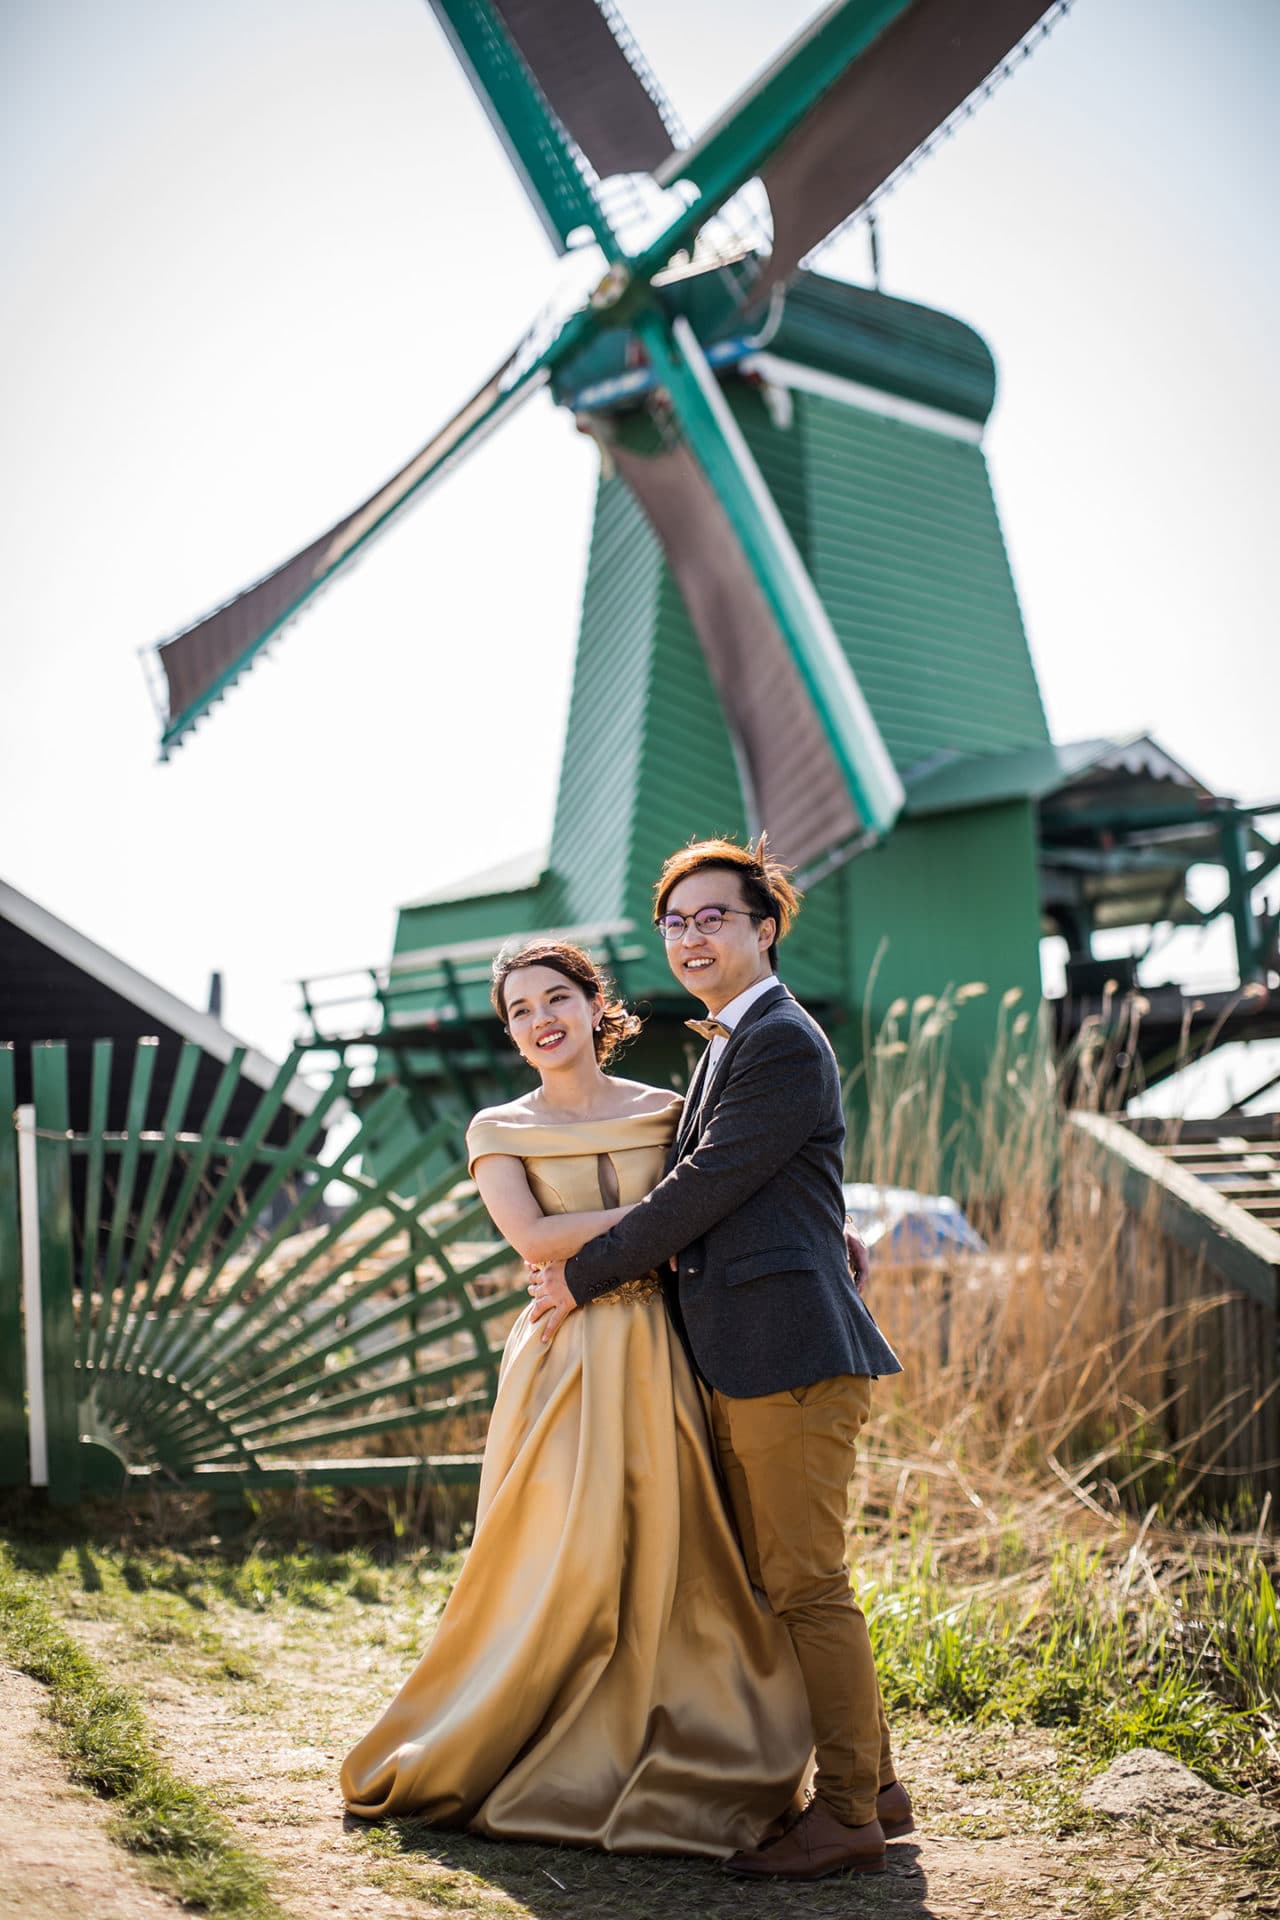 Prewedding windmill village Netherlands